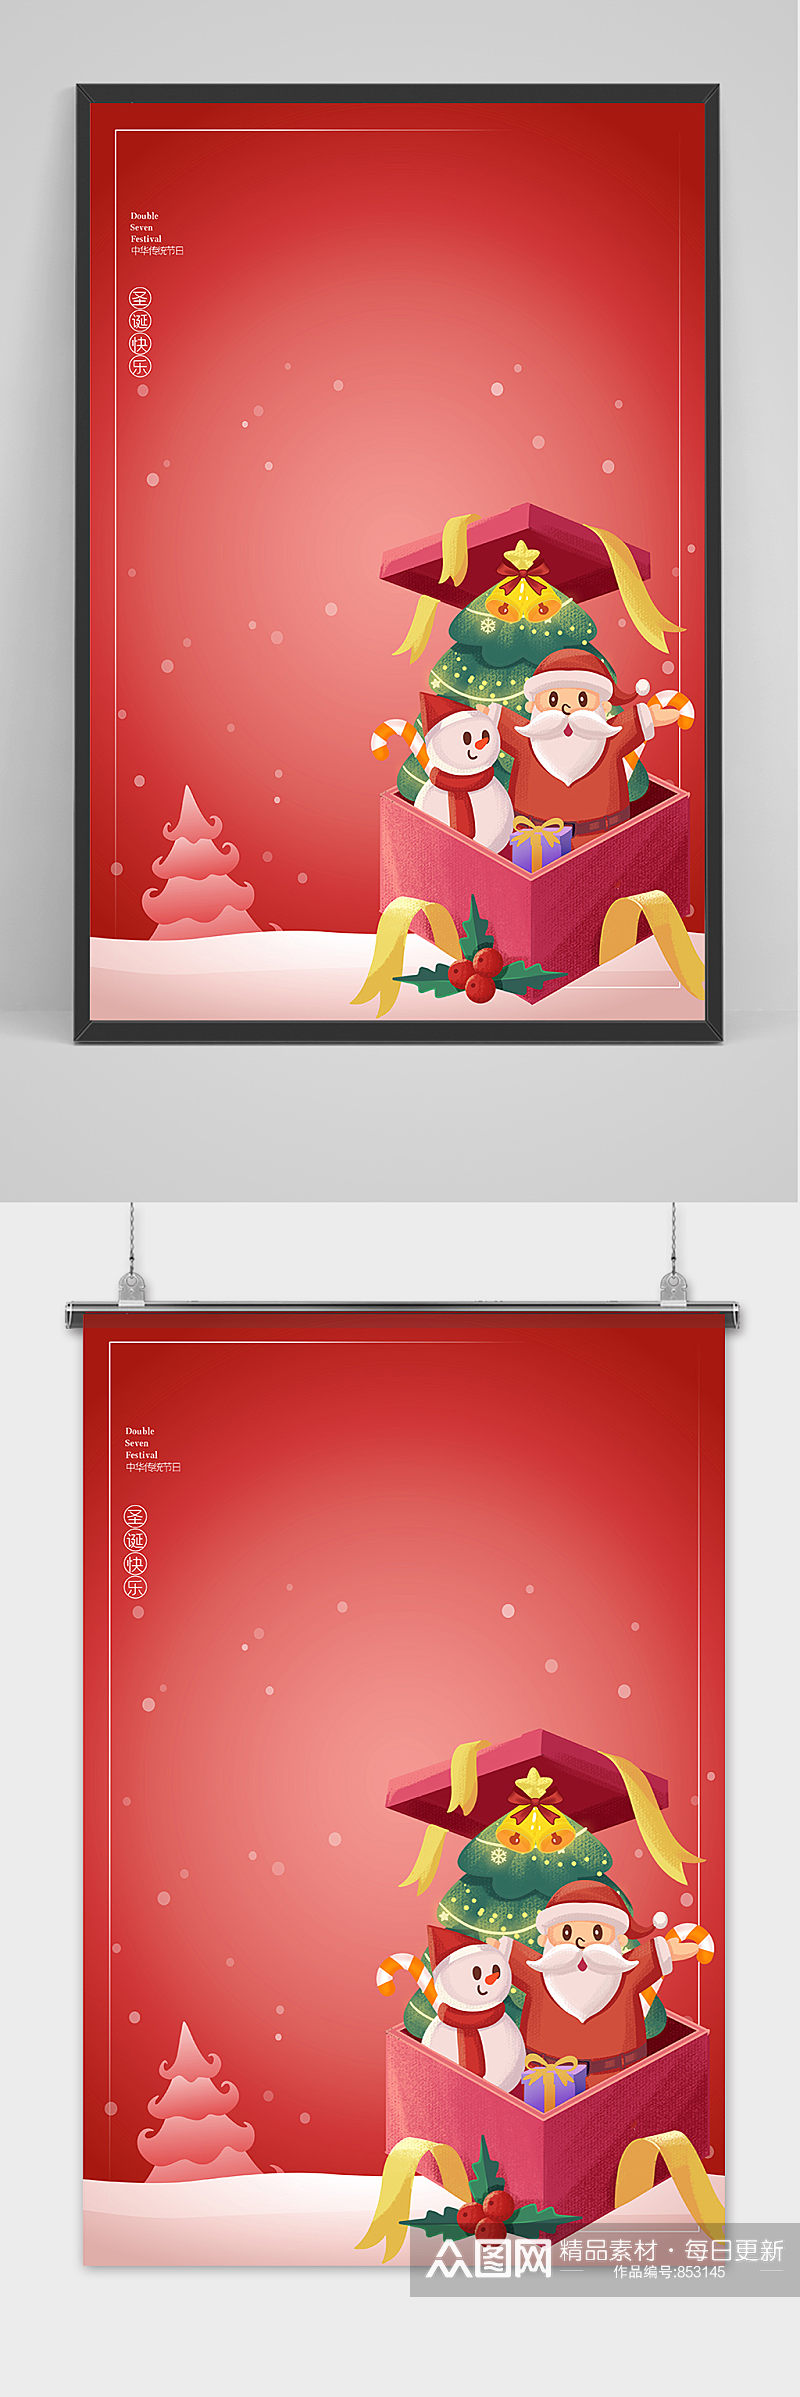 红色节日创意卡通风格圣诞节户外海报素材